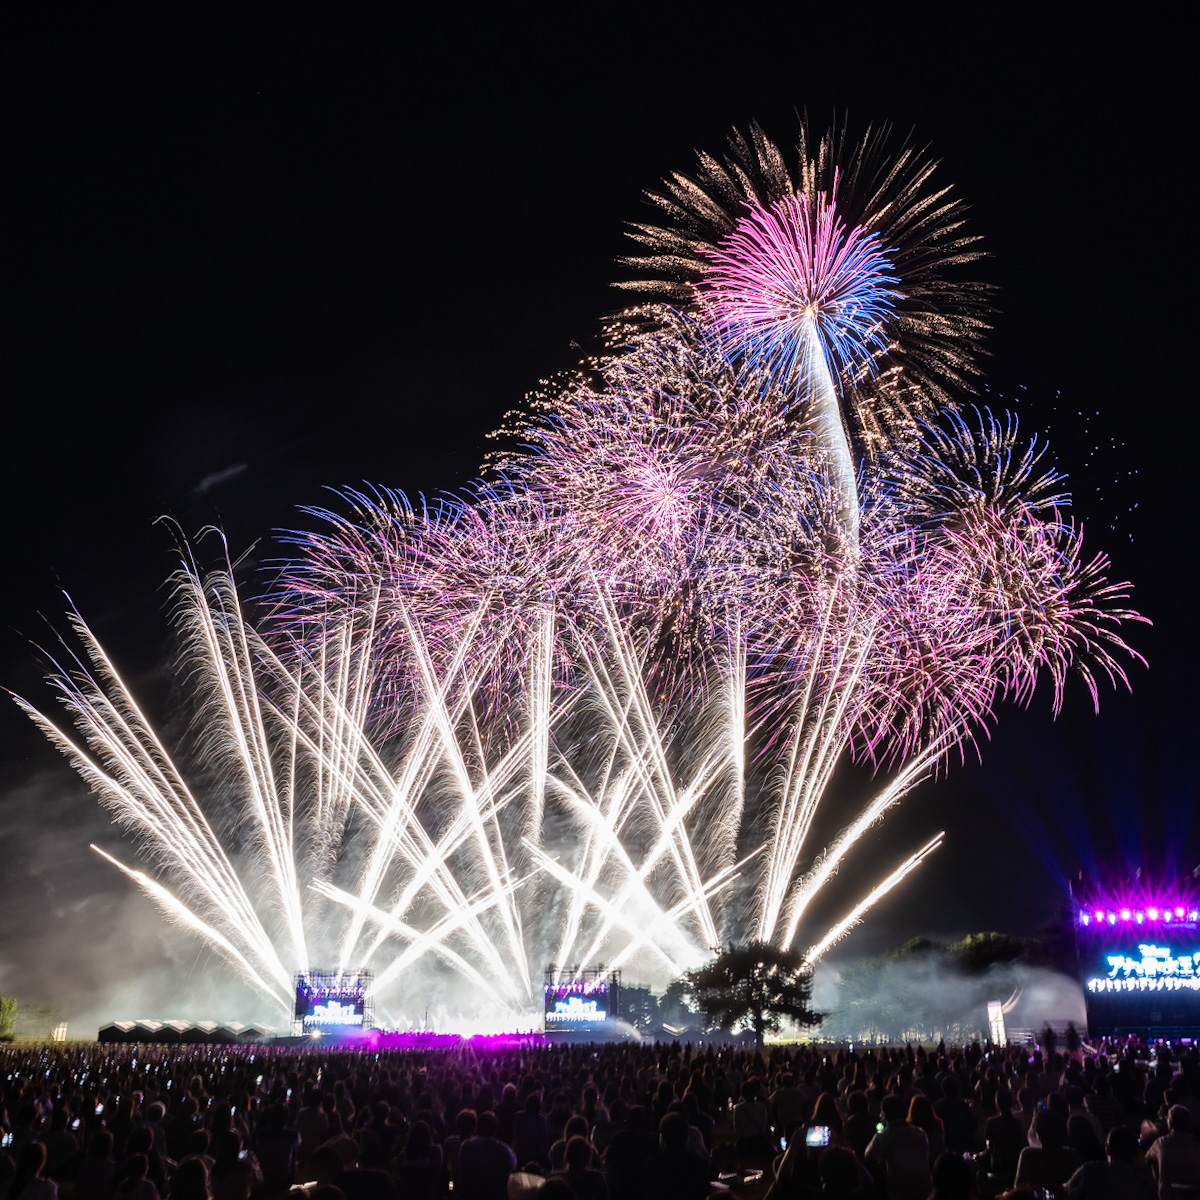 「Disney Music & Fireworks」茨城国営ひたち海浜公園 公演レポート1